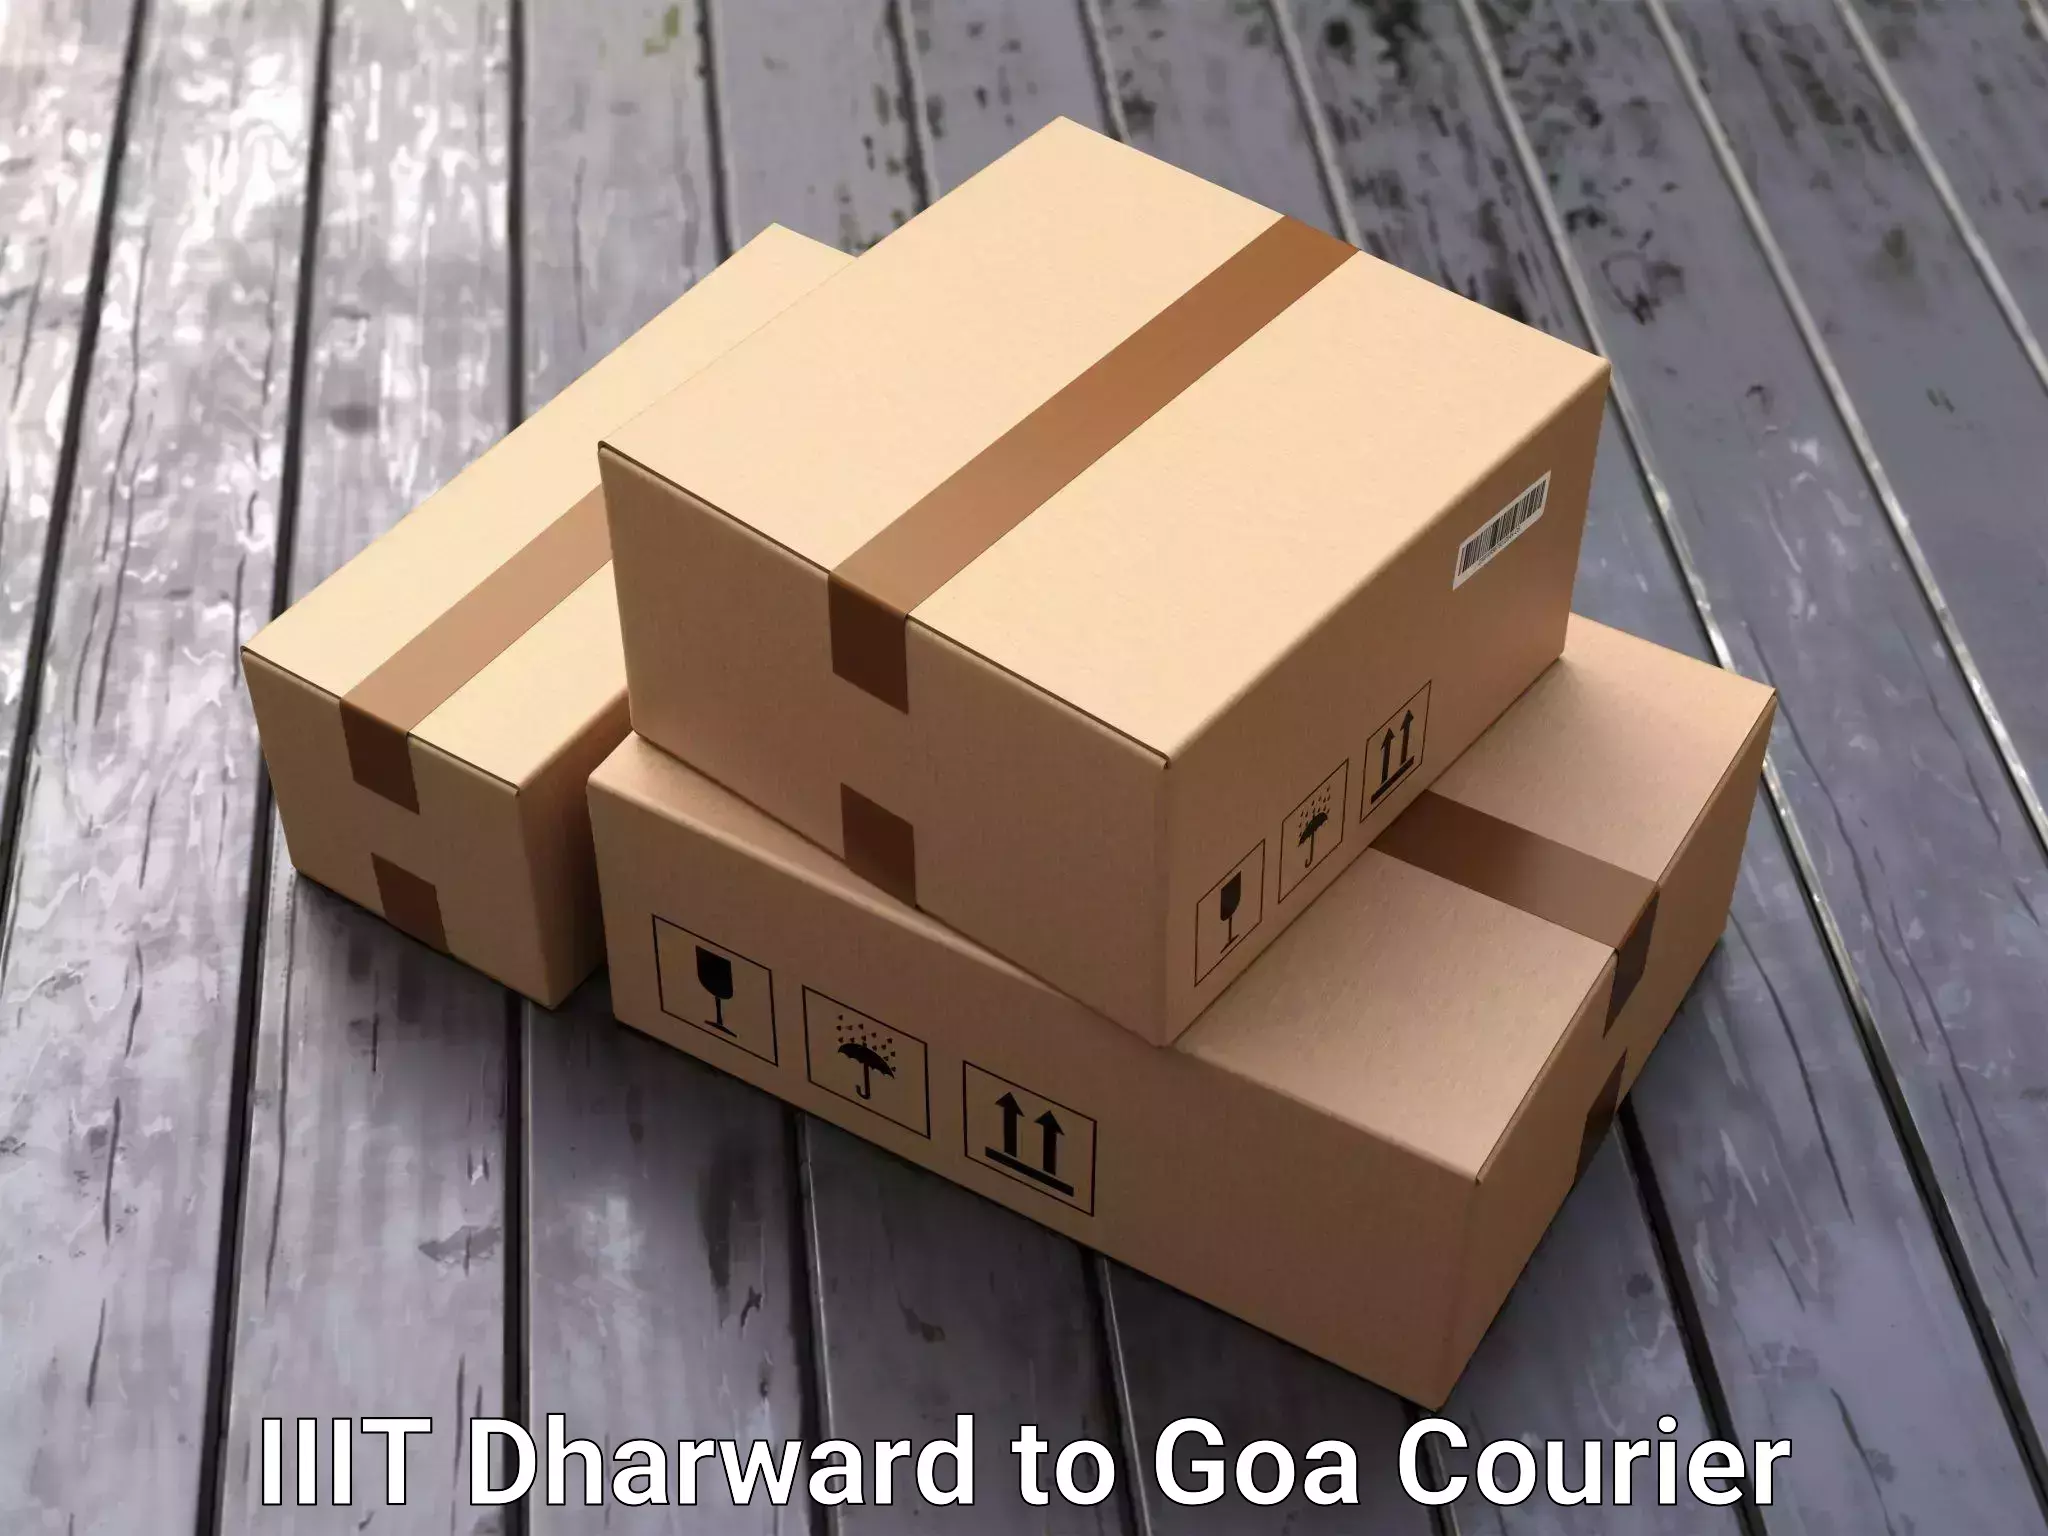 Custom moving solutions IIIT Dharward to Goa